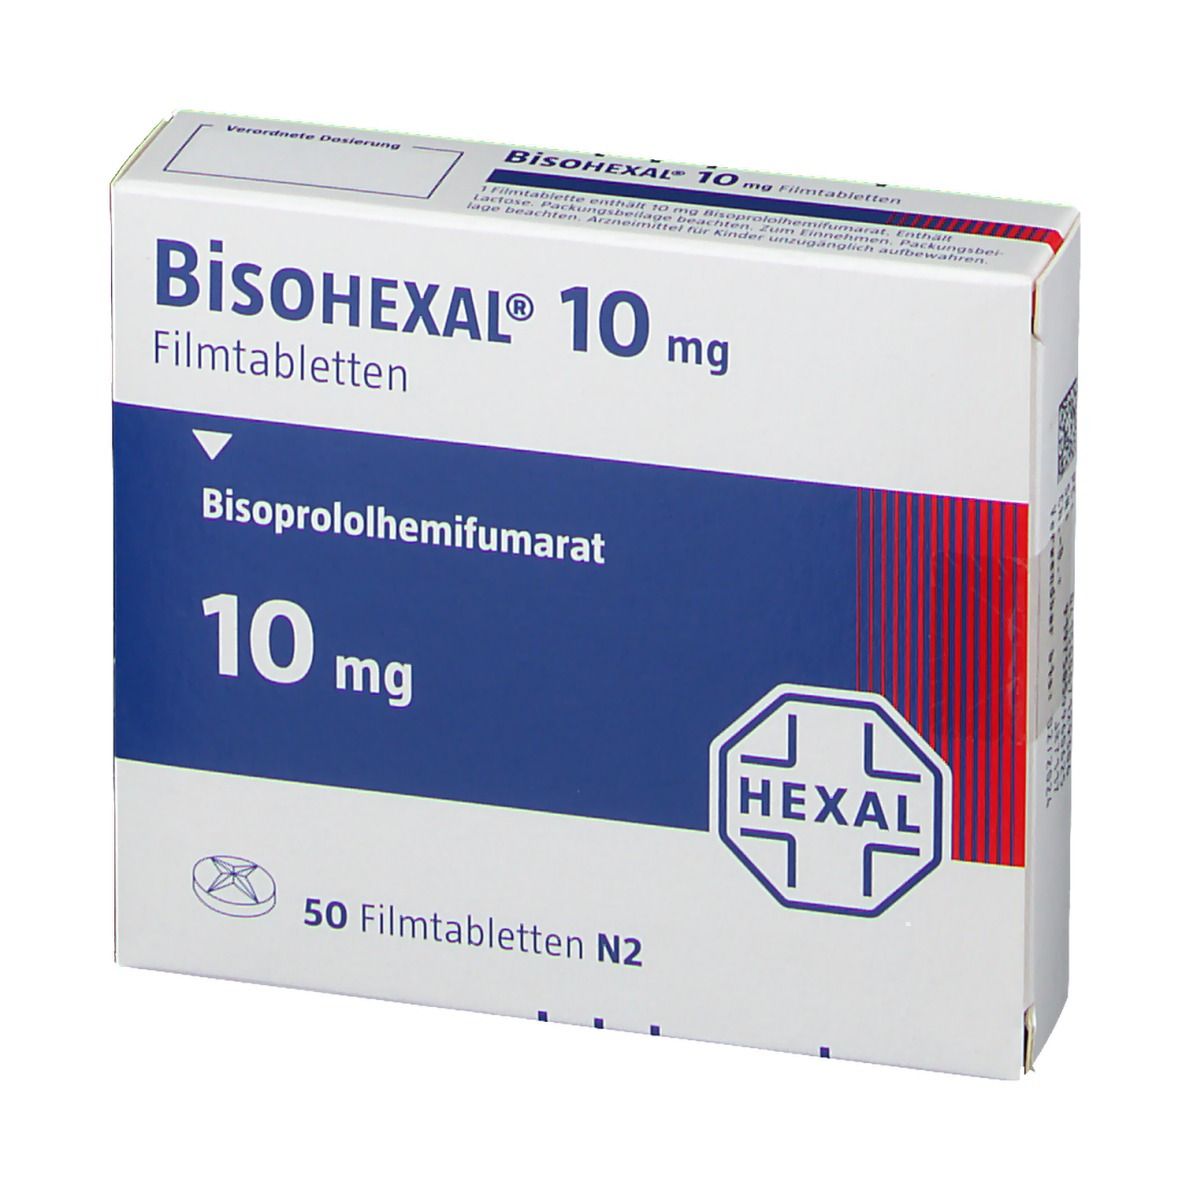 BisoHEXAL®10 mg